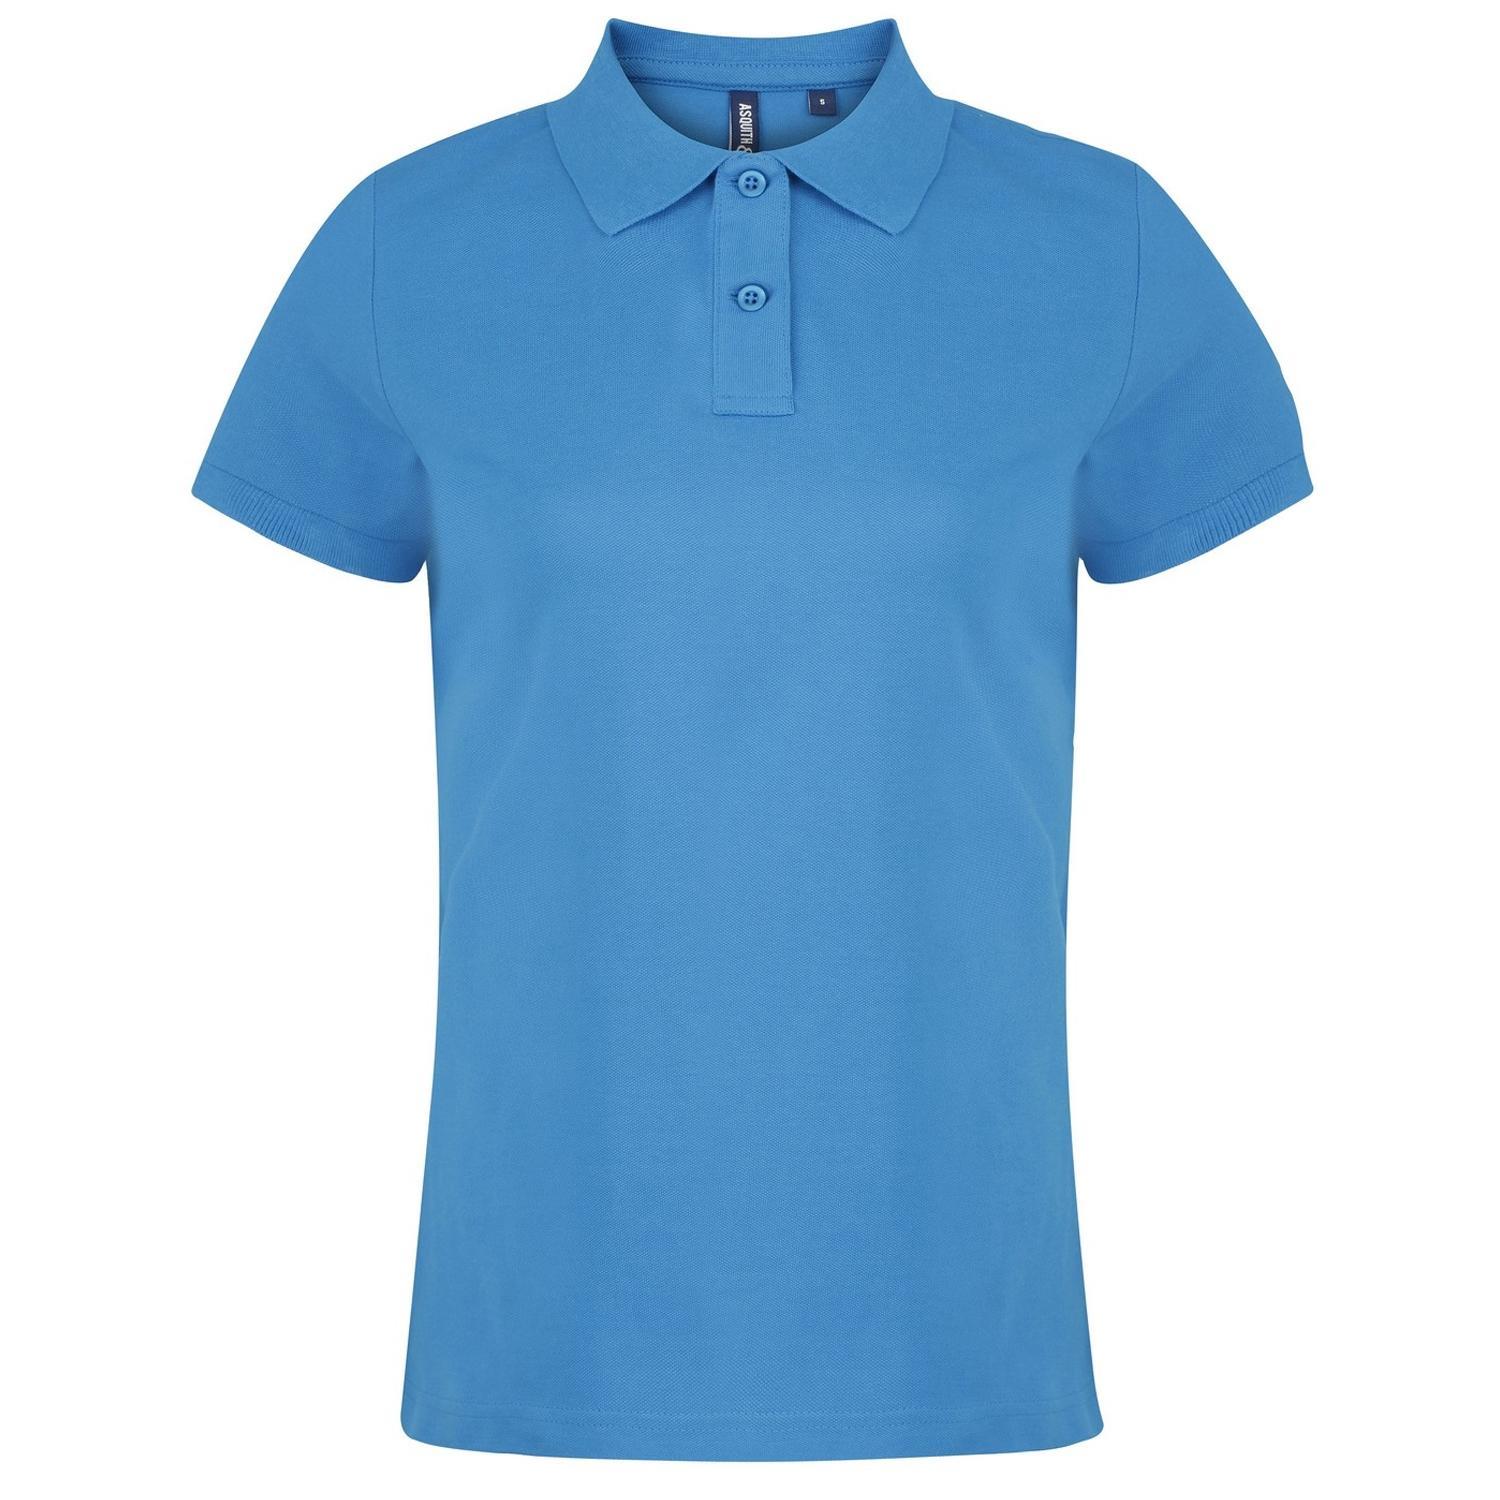 Asquith & Fox Womens/Ladies Plain Short Sleeve Polo Shirt (Sapphire) (2XL)